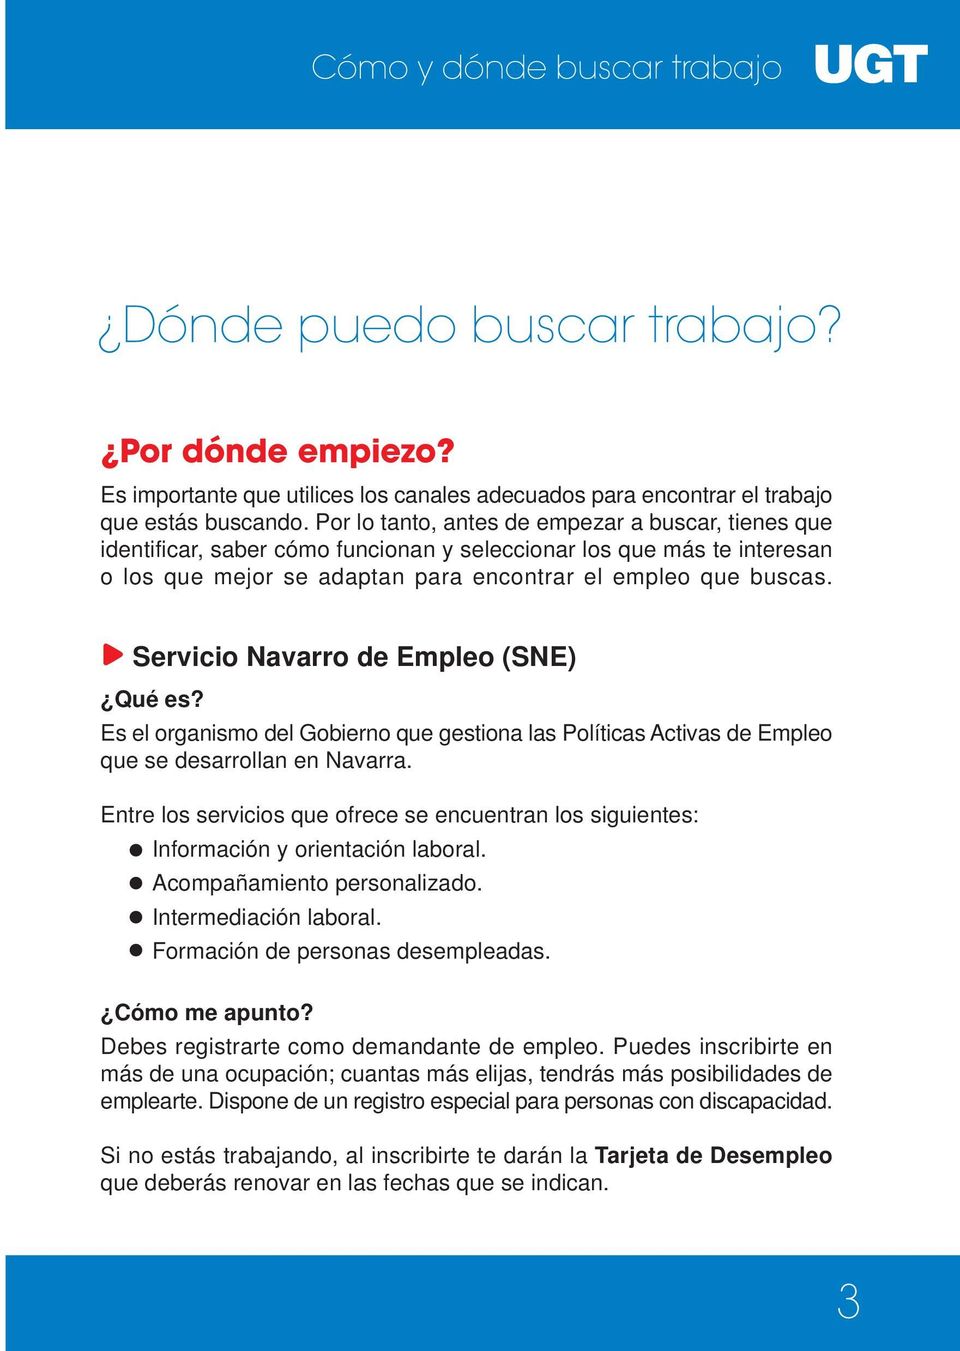 Servicio Navarro de Empleo (SNE) Es el organismo del Gobierno que gestiona las Políticas Activas de Empleo que se desarrollan en Navarra.